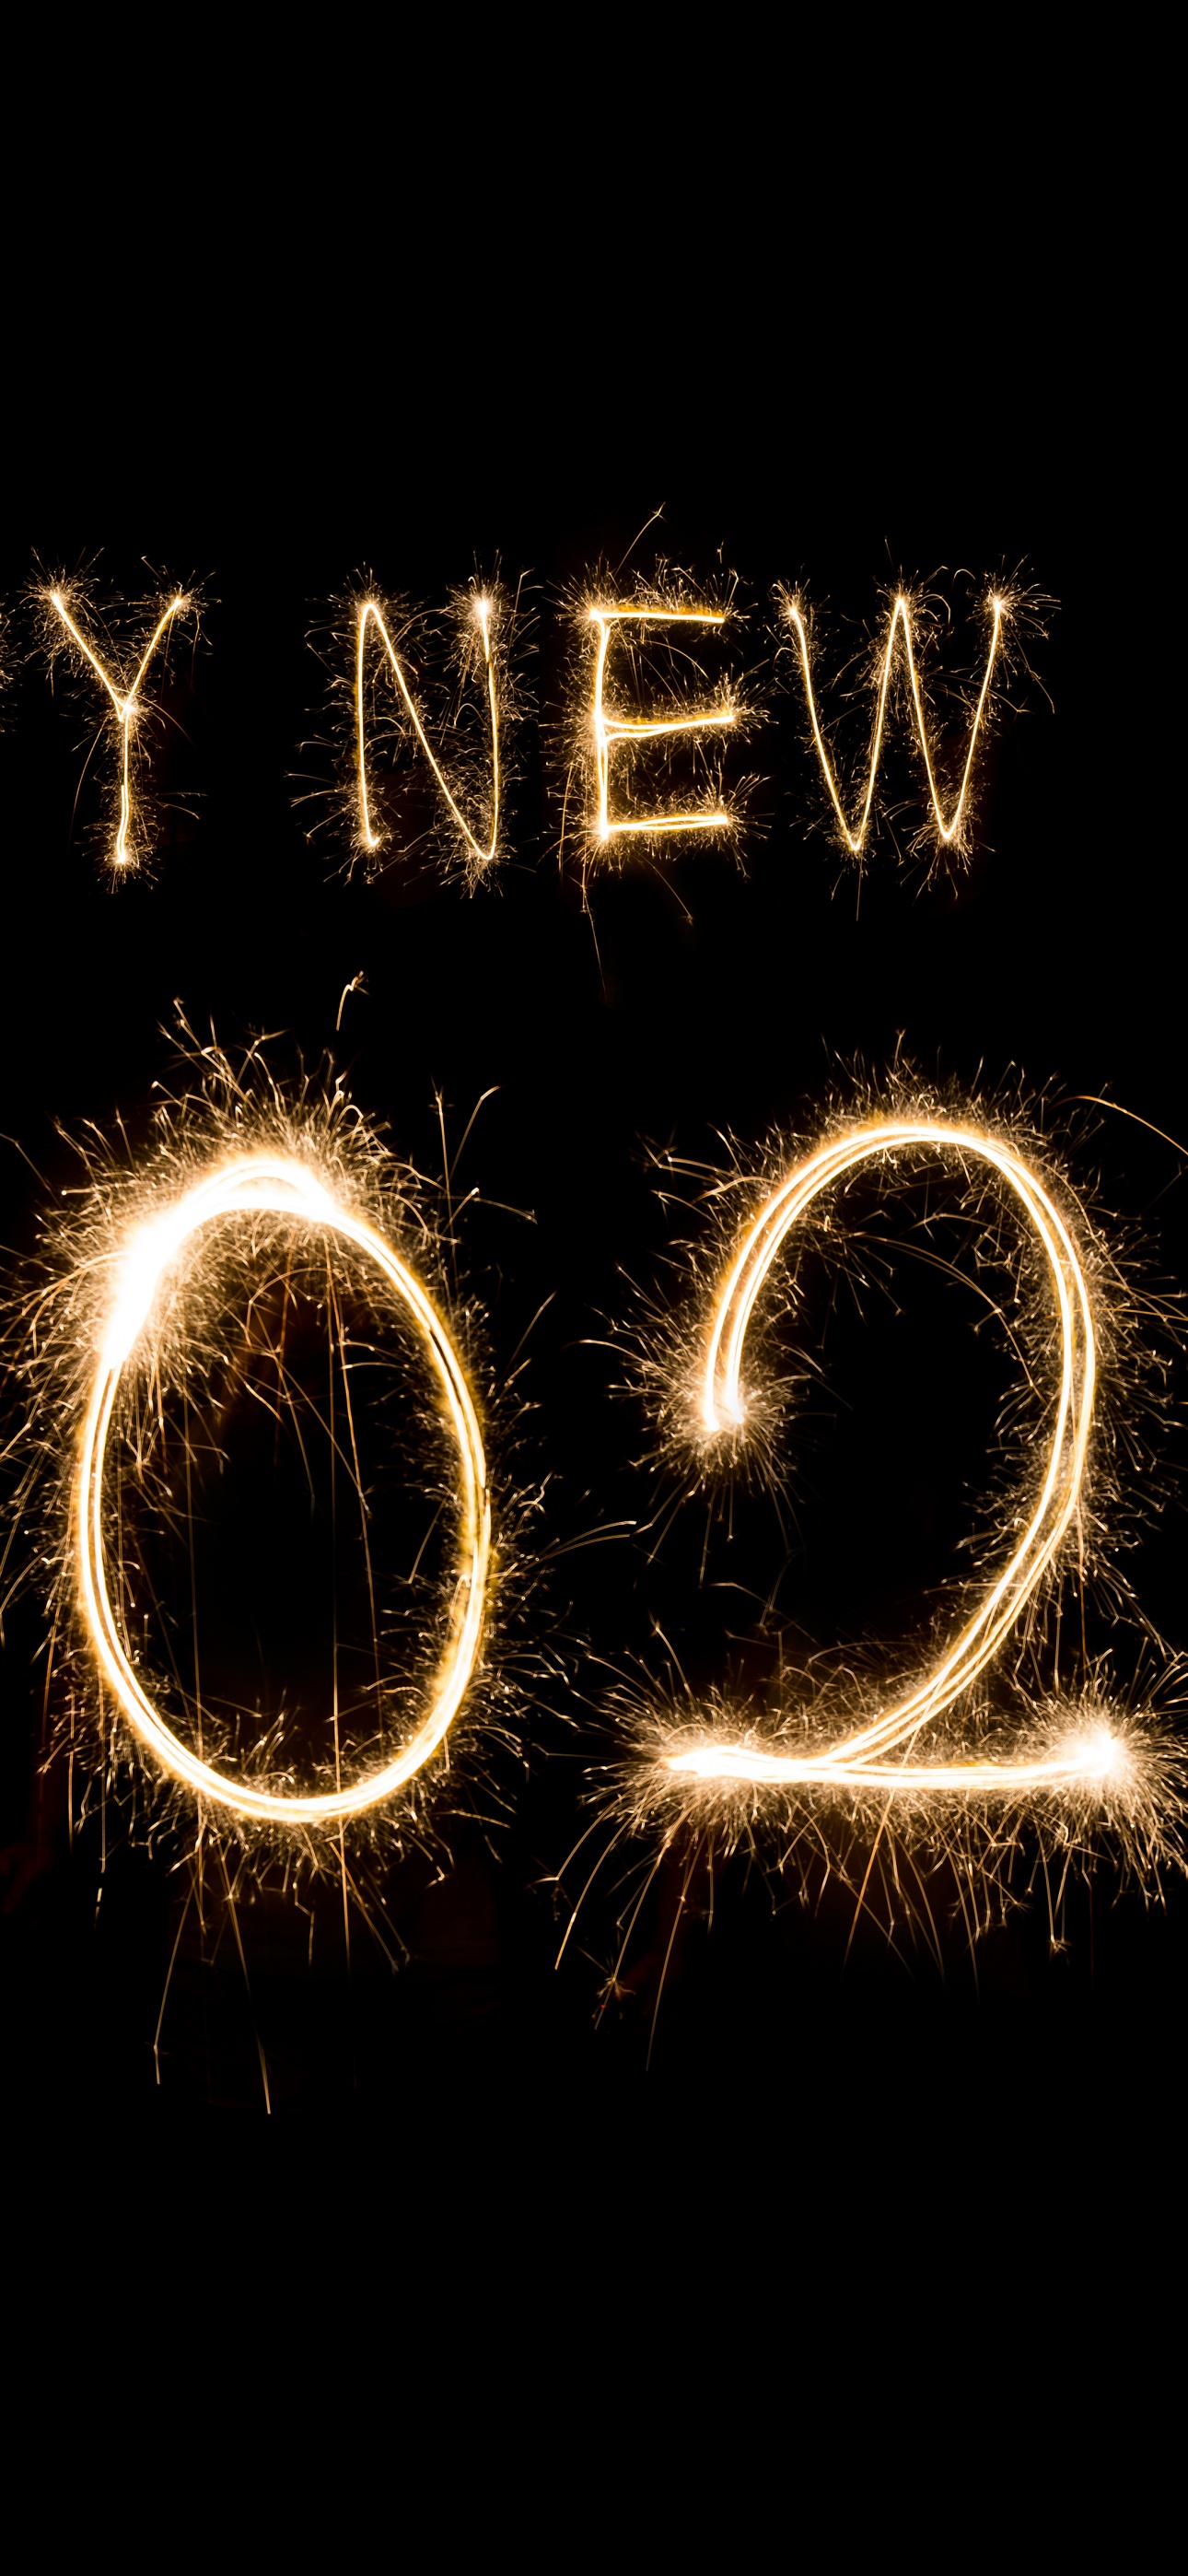 Hình nền năm mới 2024 4K với pháo hoa và đom đóm sáng lấp lánh trong không gian tối tăm sẽ chứng tỏ sự phấn khích của bạn trong đêm giao thừa. Hãy tham gia vào khung cảnh đó và cảm nhận nét đẹp tuyệt vời của ngày đầu tiên trong năm mới. Sẽ là một kỷ niệm khó quên!